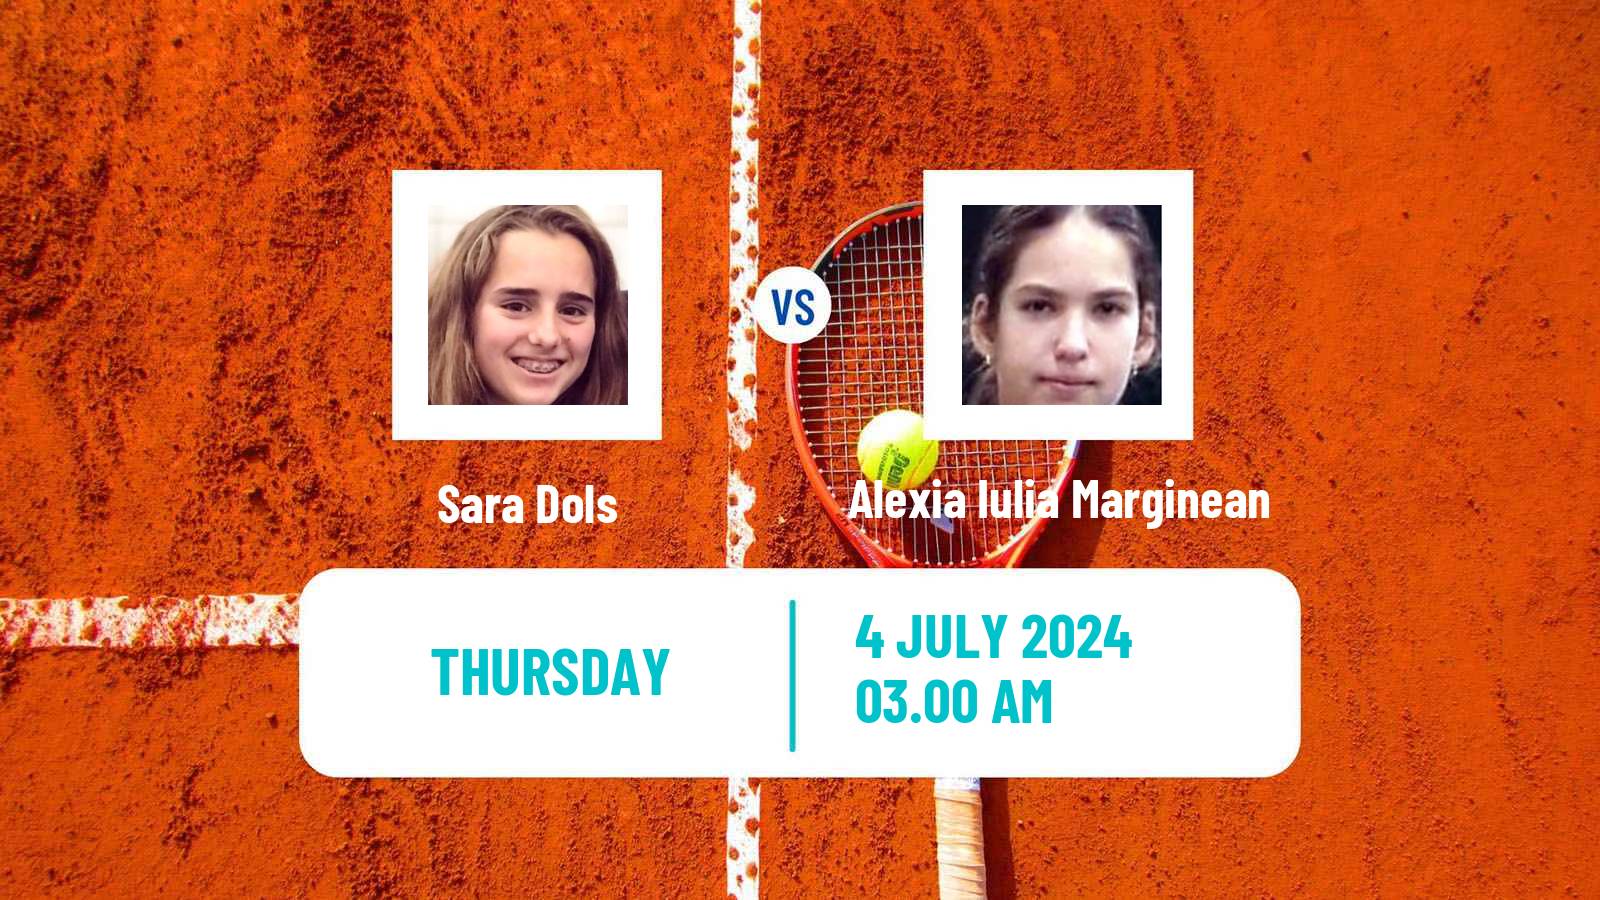 Tennis ITF W15 Galati 2 Women Sara Dols - Alexia Iulia Marginean